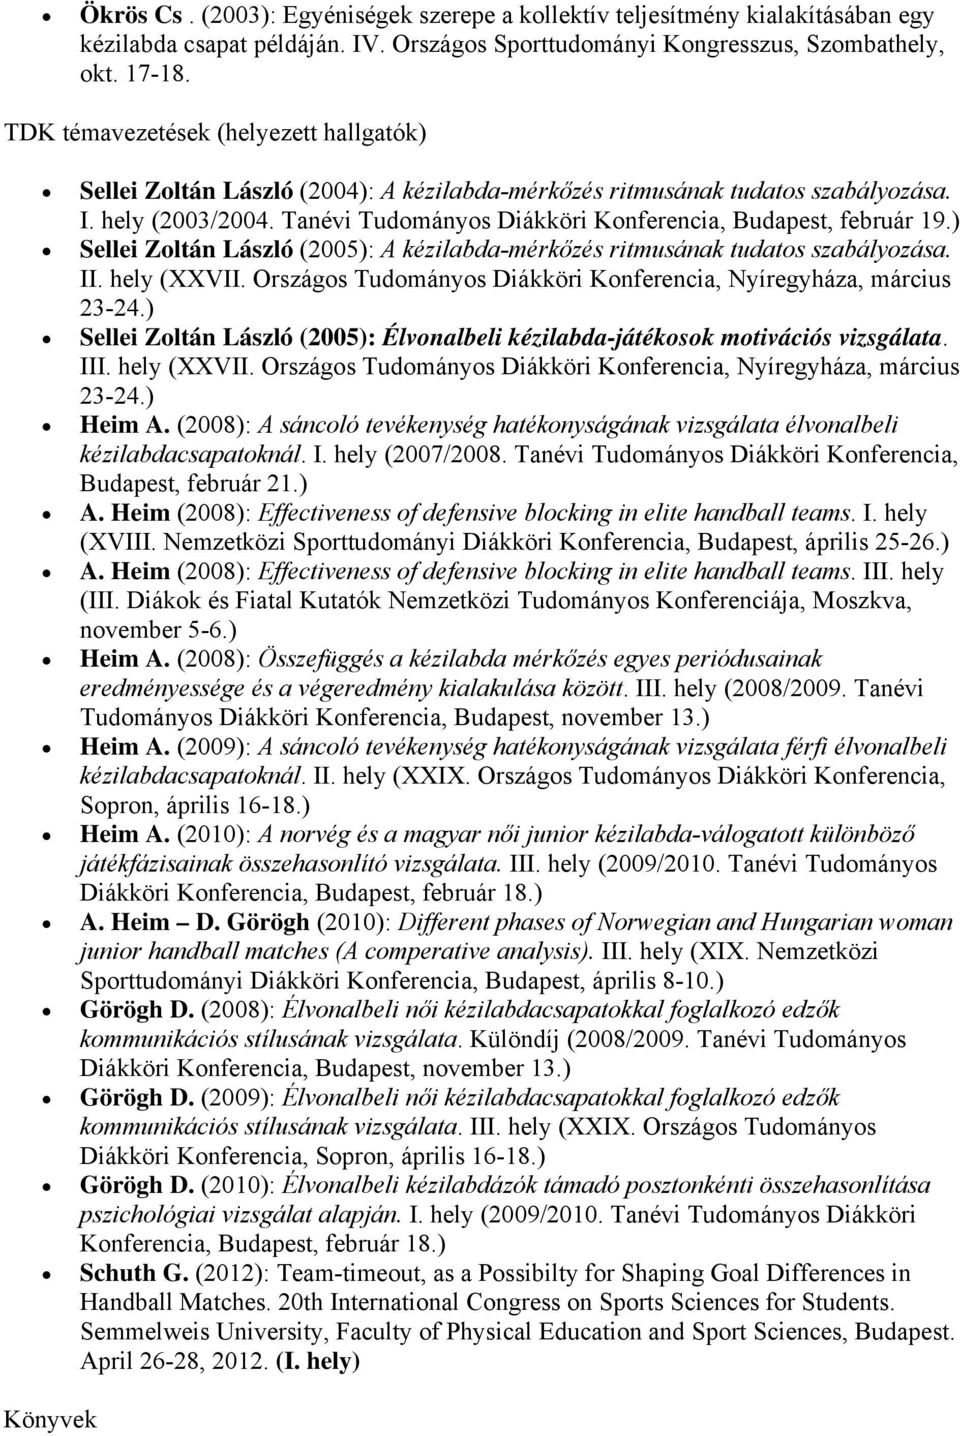 Tanévi Tudományos Diákköri Konferencia, Budapest, február 19.) Sellei Zoltán László (2005): A kézilabda-mérkőzés ritmusának tudatos szabályozása. II. hely (XXVII.